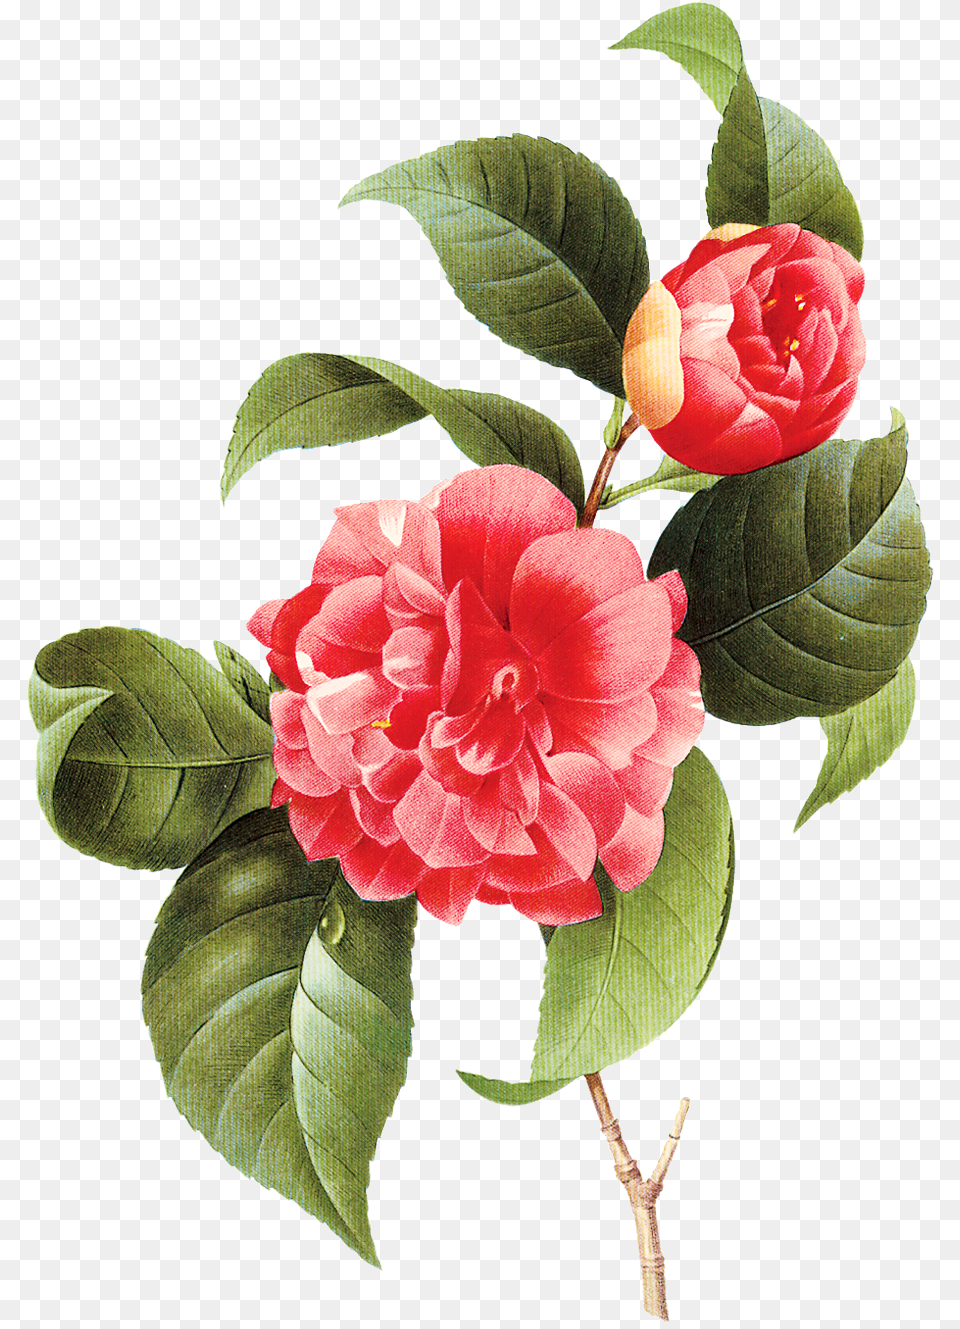 Vintage Little Vector Flower Transparente Imagens Camellia Poster, Plant, Dahlia, Rose, Petal Free Png Download